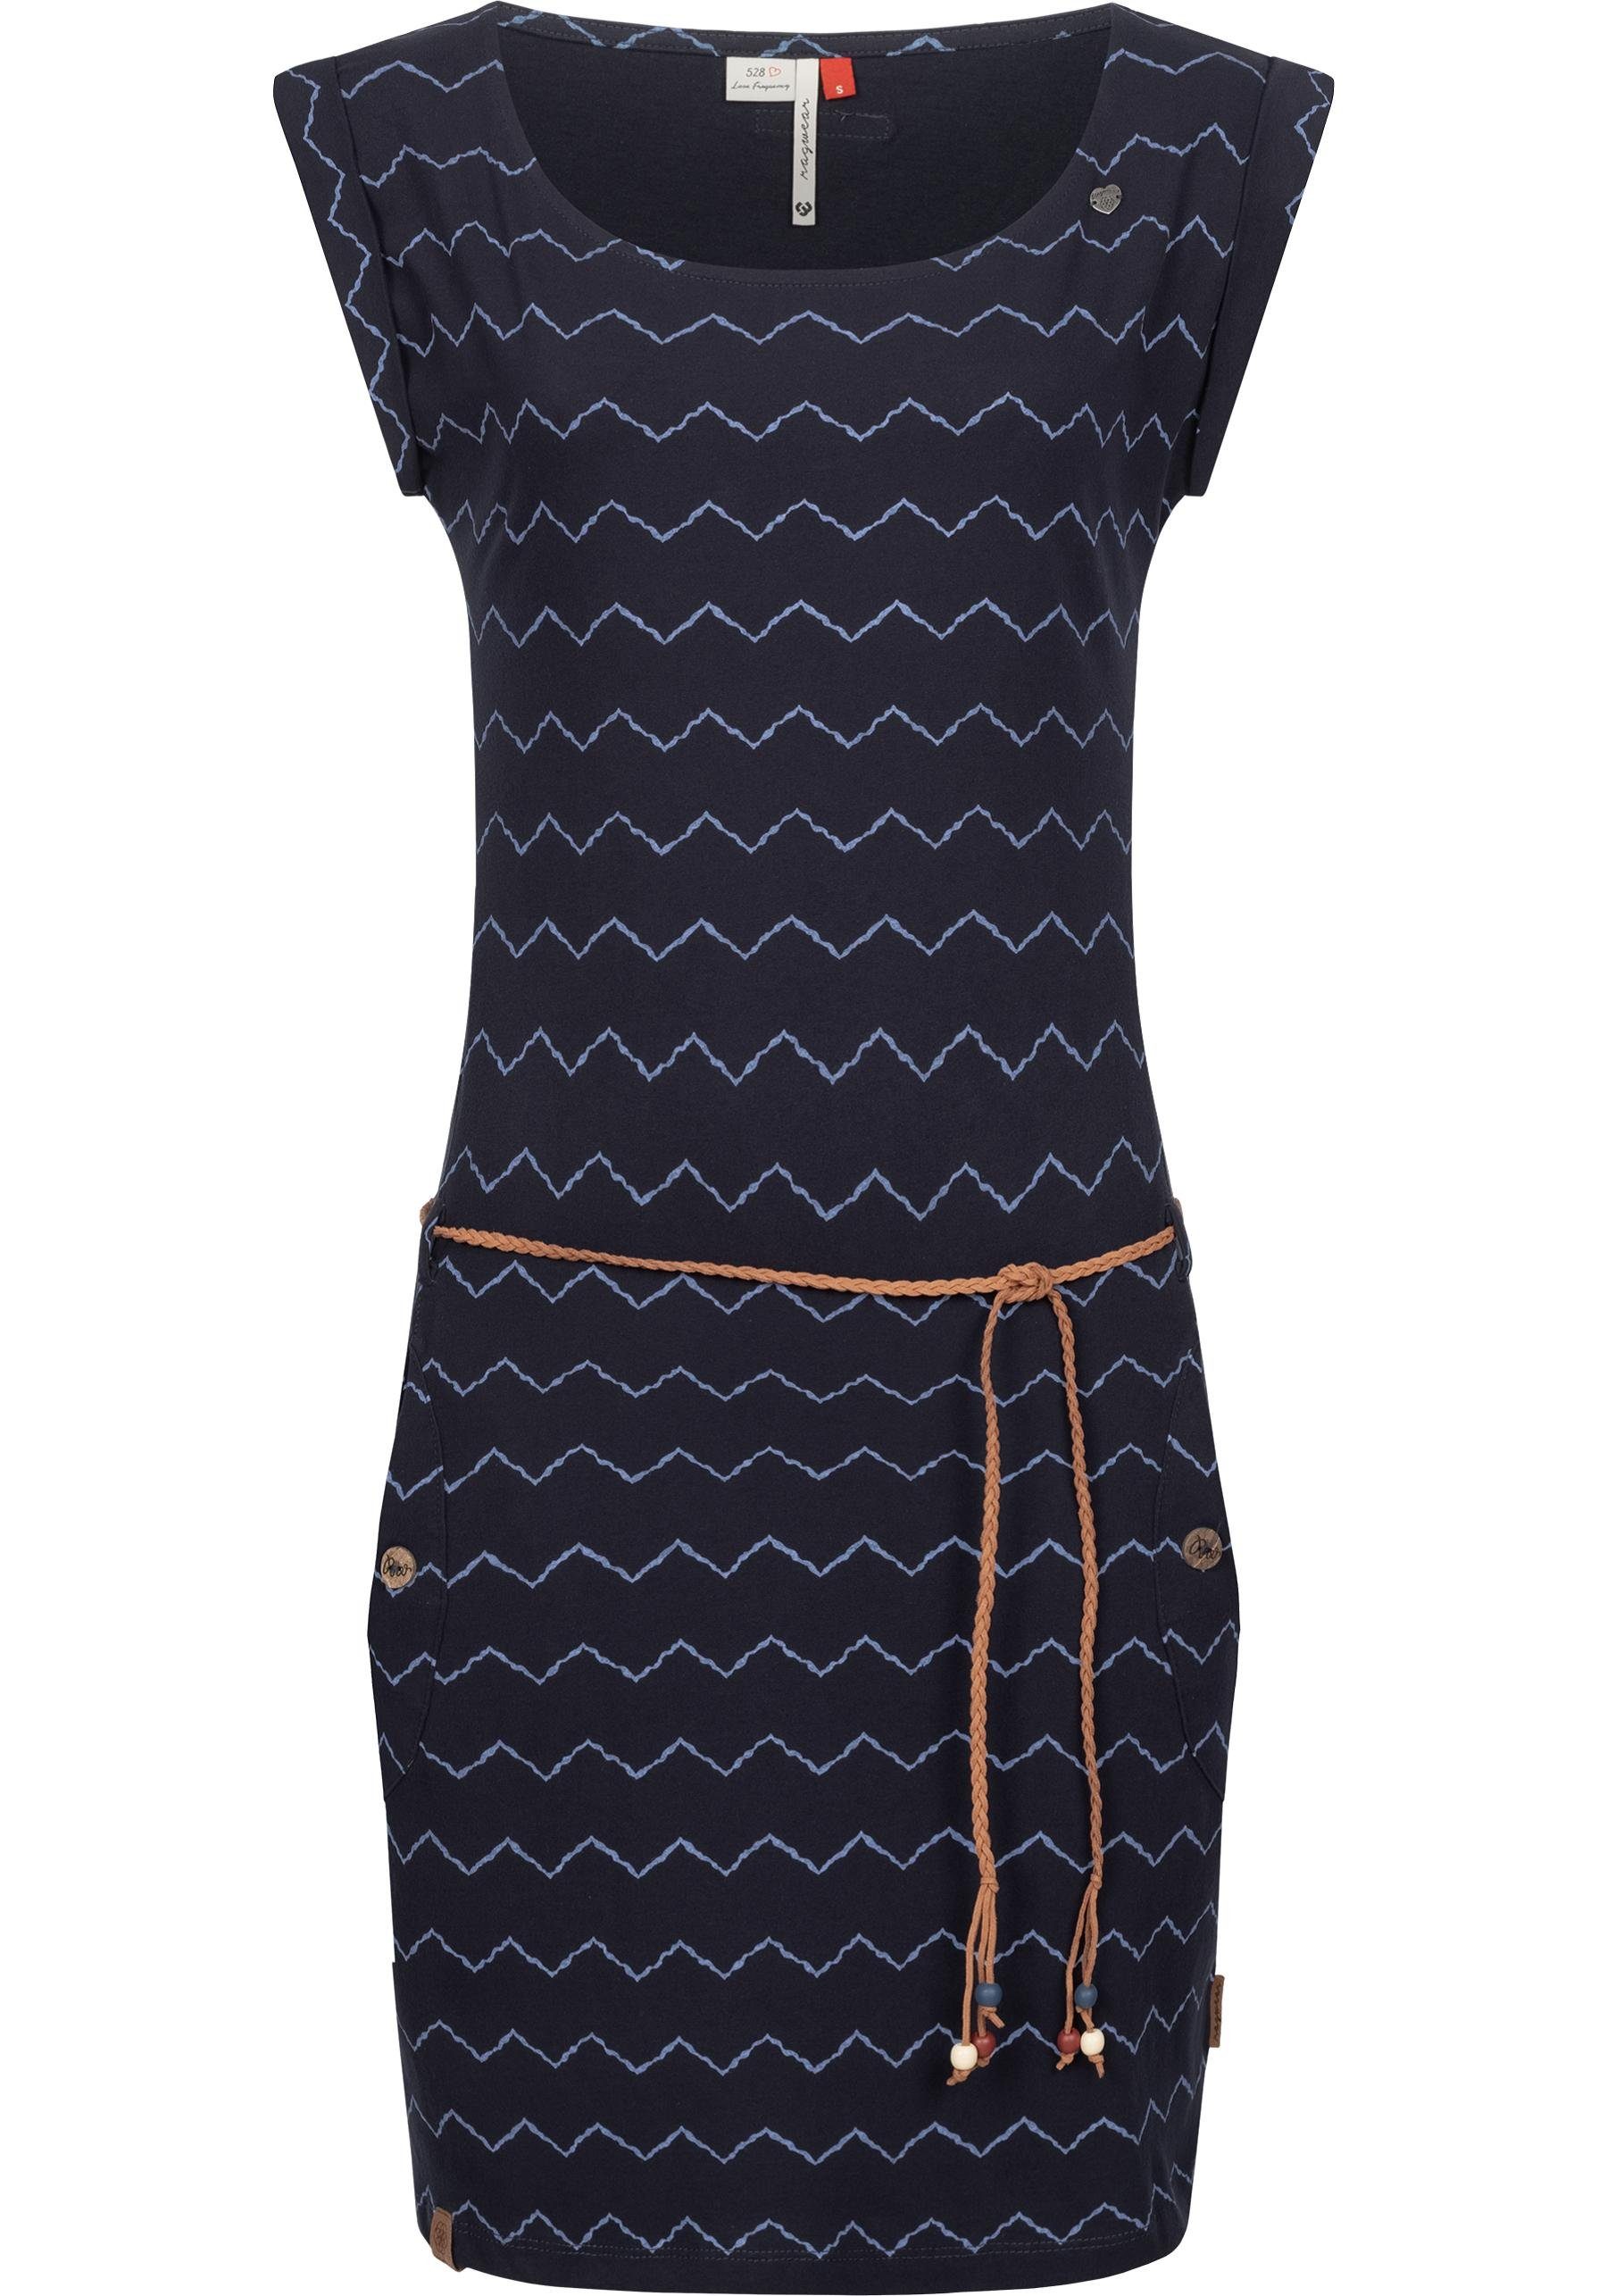 Print Tag Bindegürtel und II Jerseykleid Shirtkleid navy stylisches Zag Ragwear Zig mit coolem